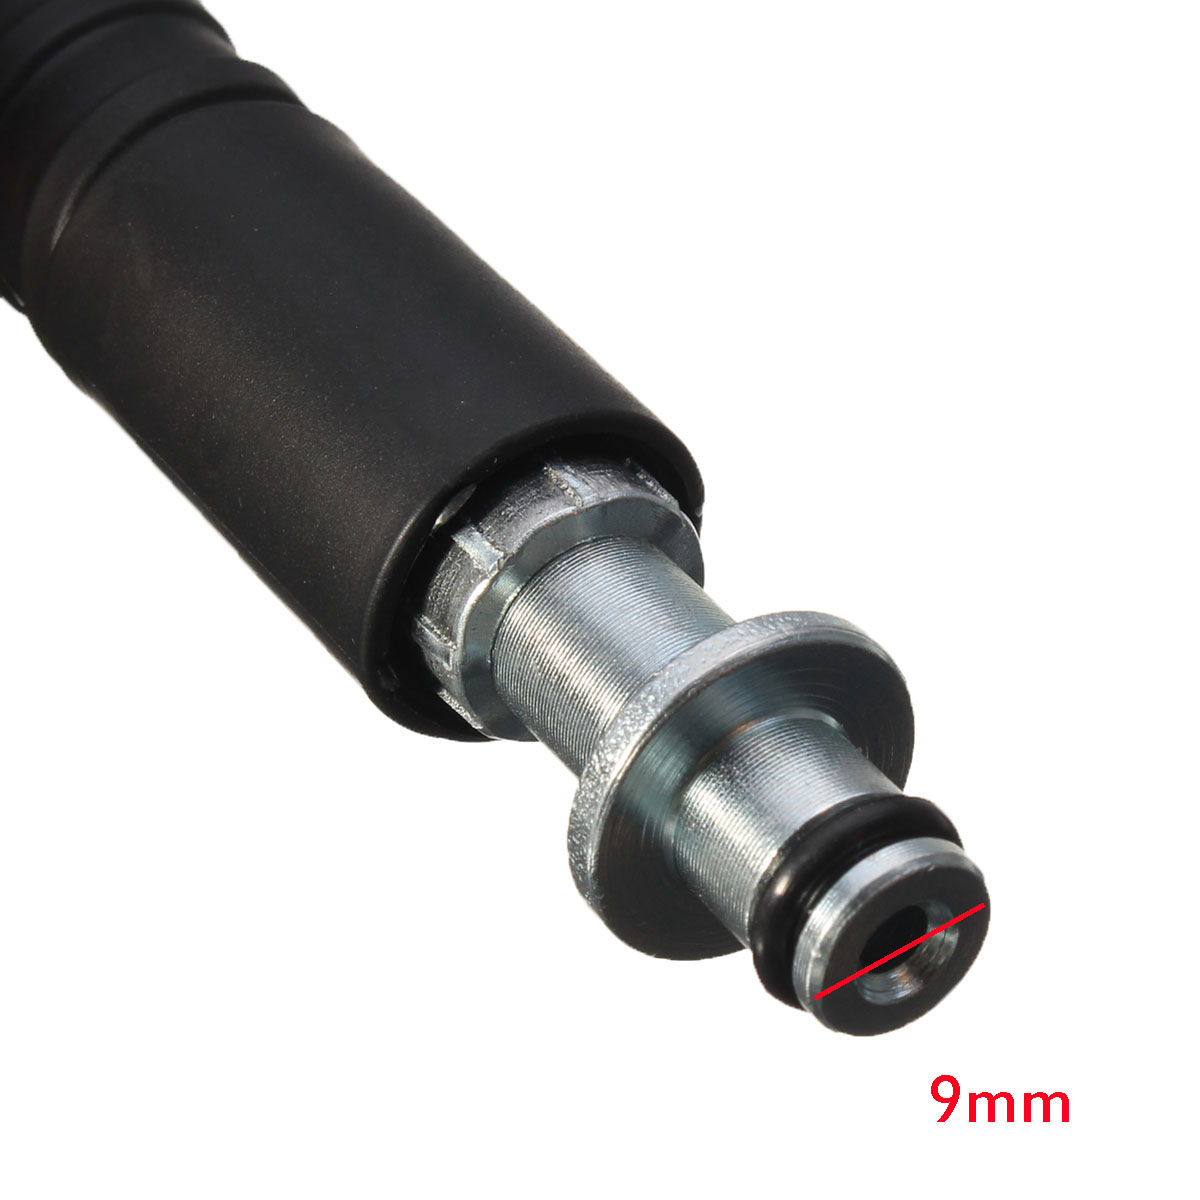 5M-5800PSI-Pressure-Washer-Hose-22mm-Pump-End-Fitting-for-Karcher-K2-Cleaner-1299990-1